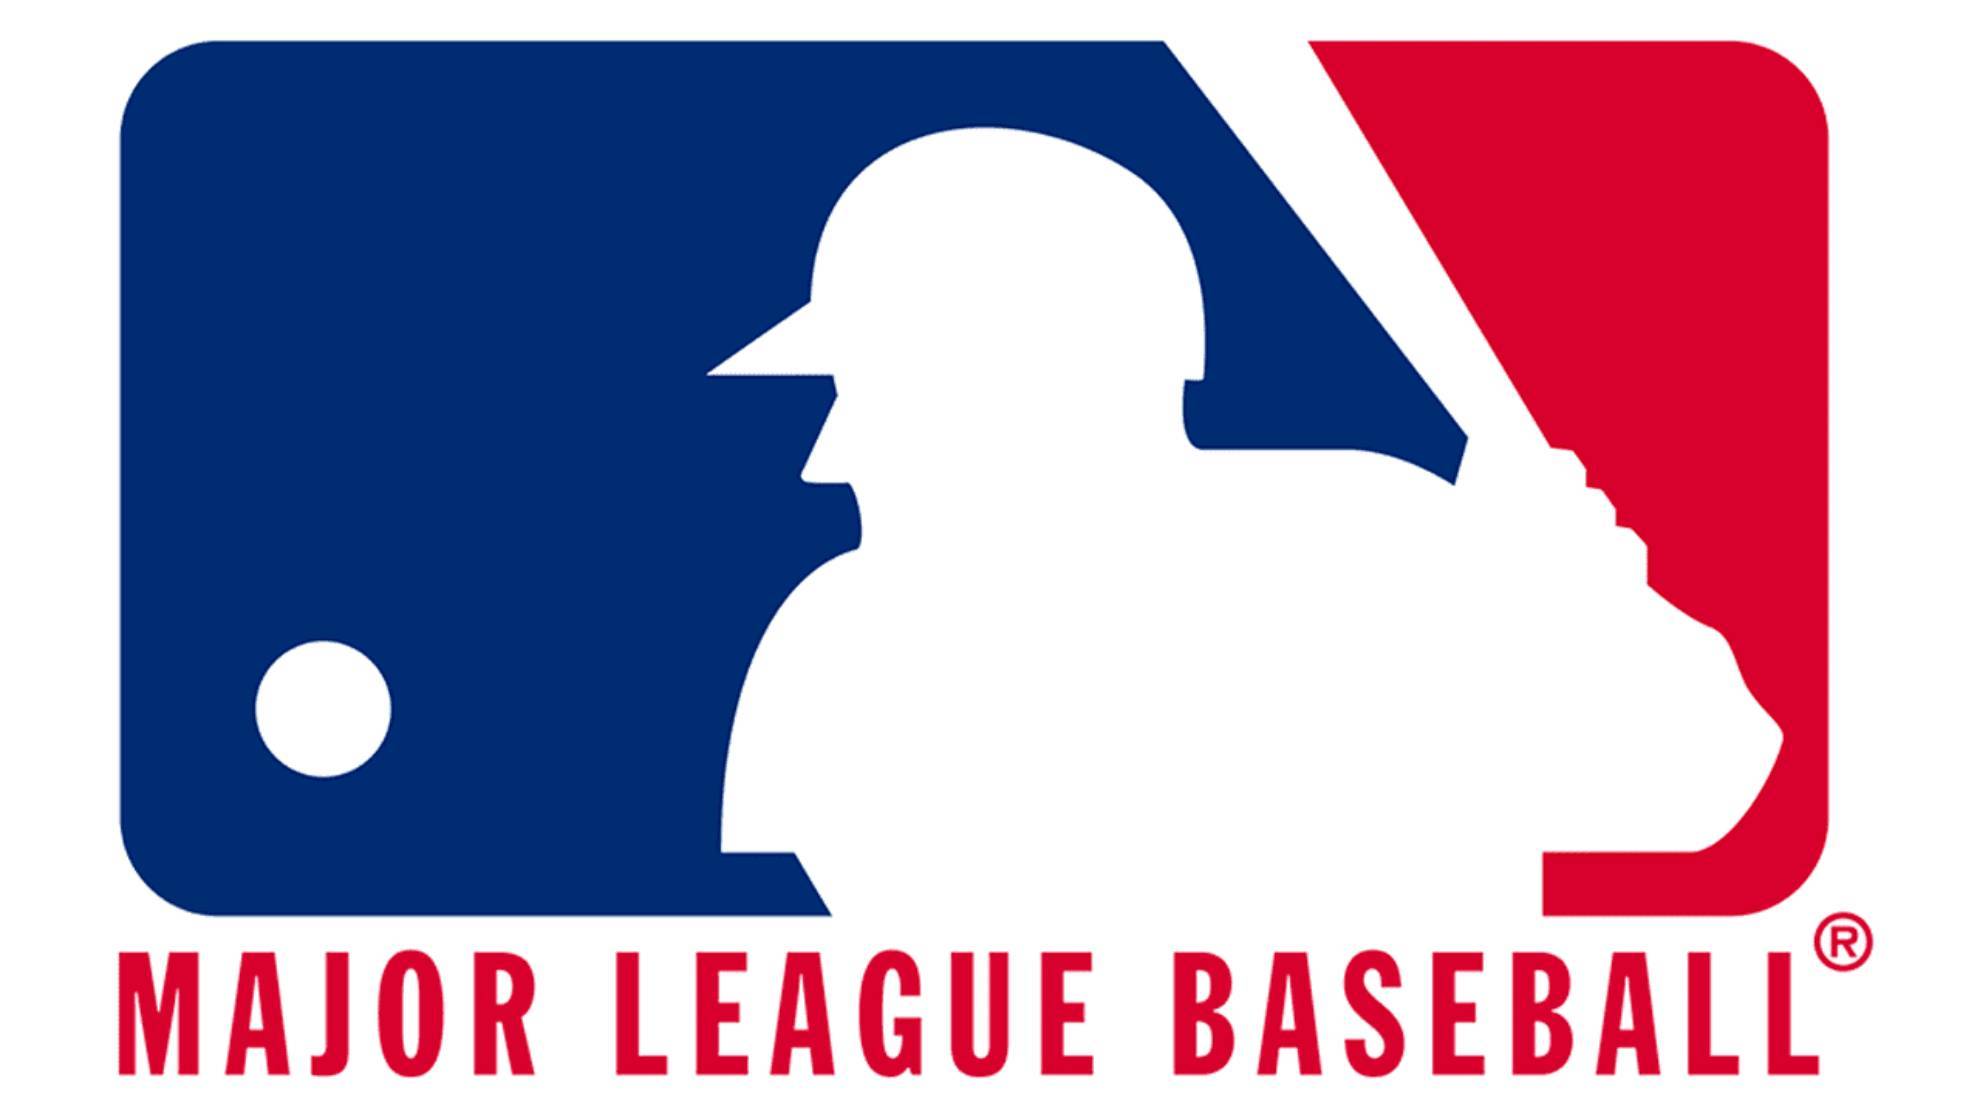 ¿Qué significan las siglas MLB